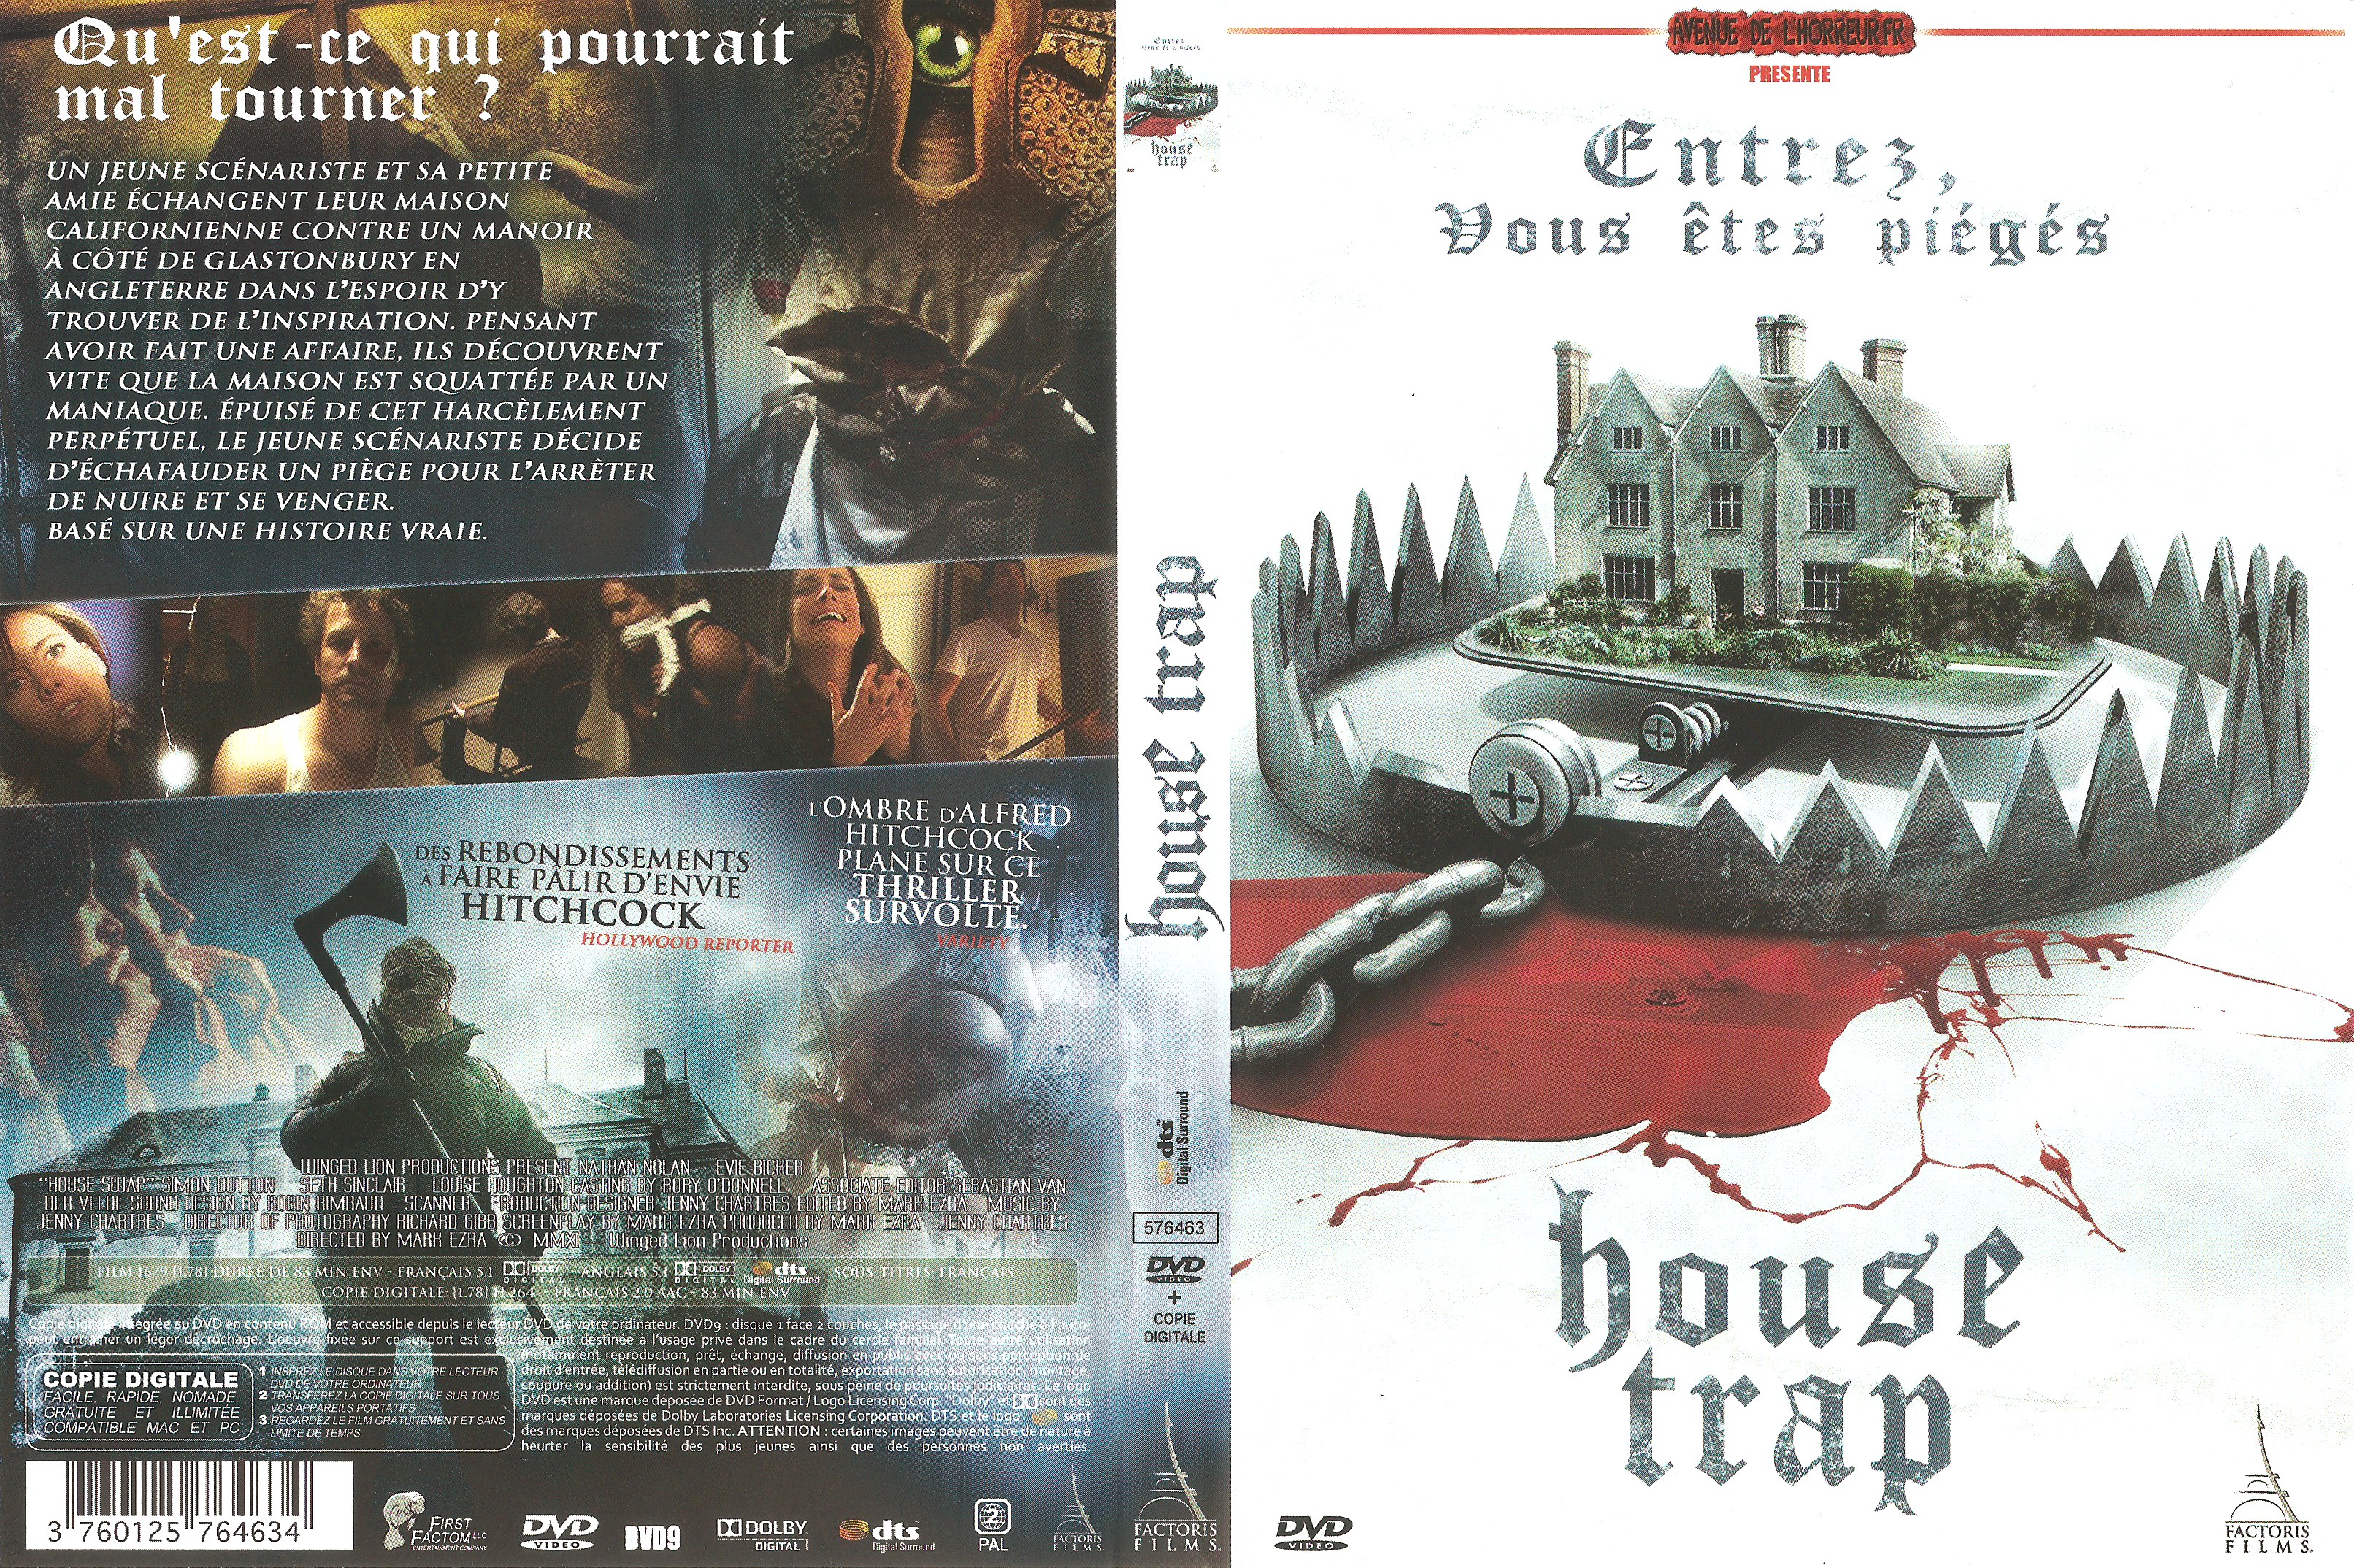 Jaquette DVD House Trap